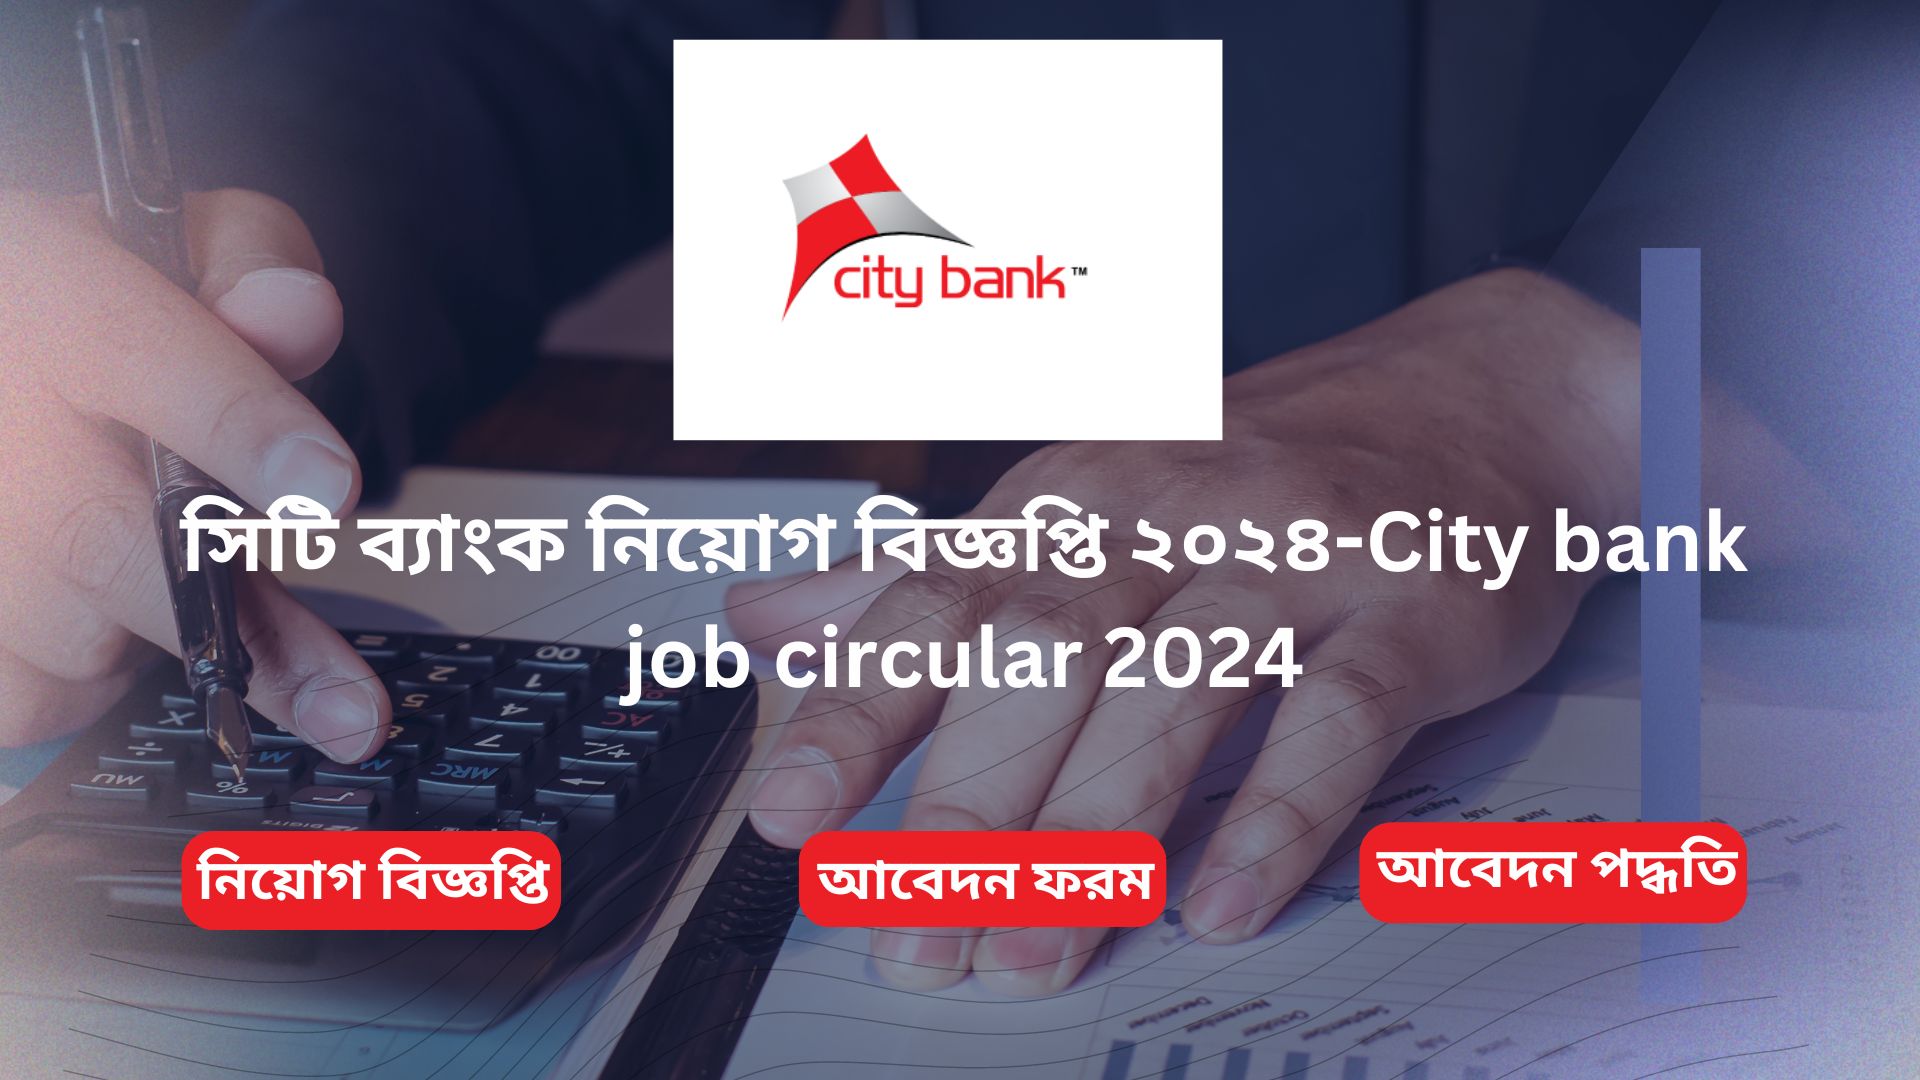 City bank job circular 2024